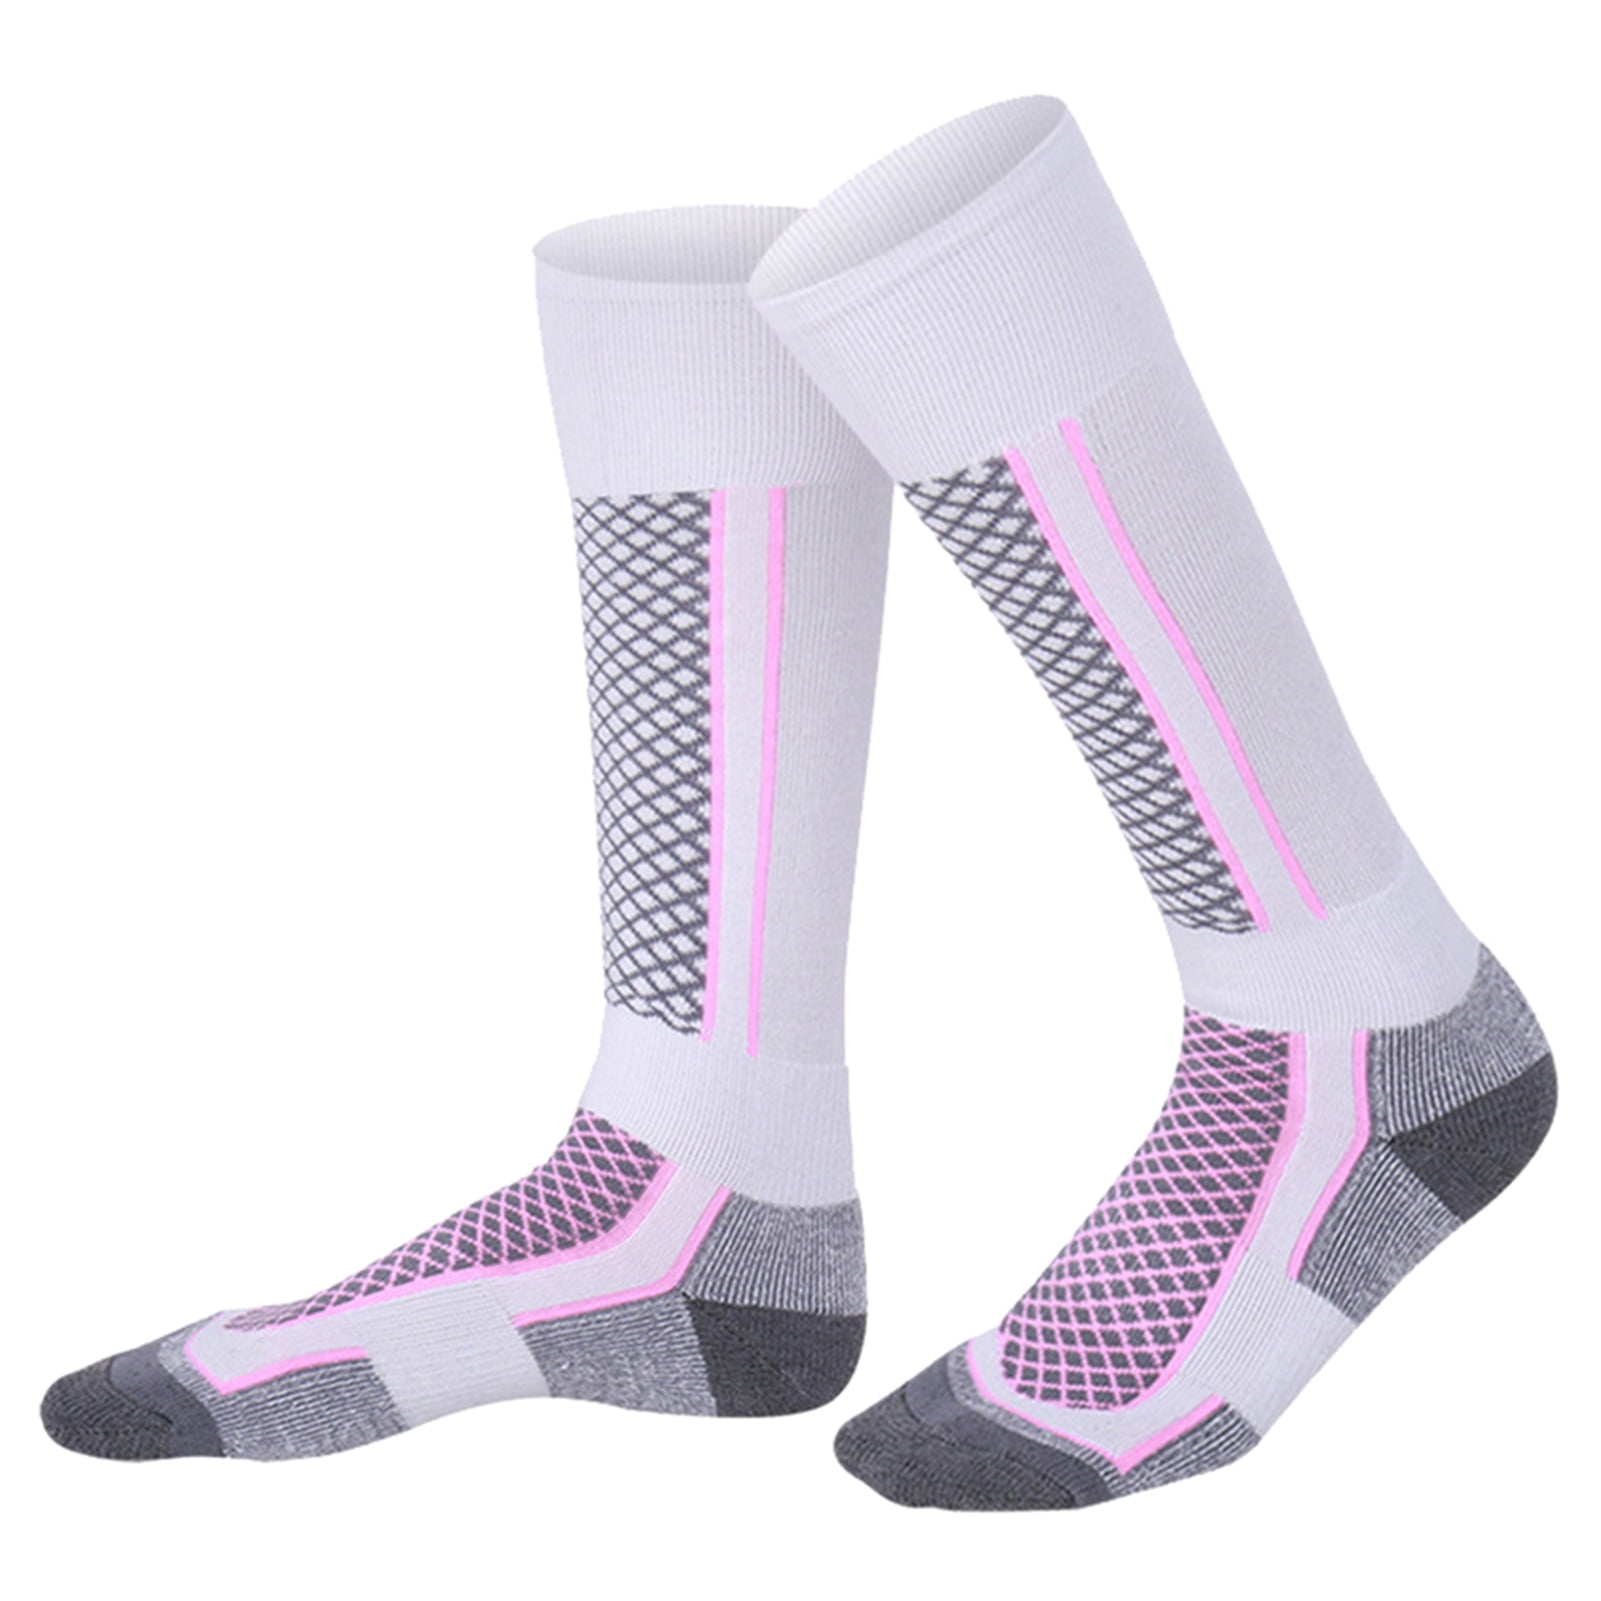 AMITOFO 5 Pairs Non Slip Grip Socks - Non Skid Socks Ideal for Yoga,  Pilates, Hospital Use - Men & Women's Crew Sticky Gripper Socks (Size 7-10)